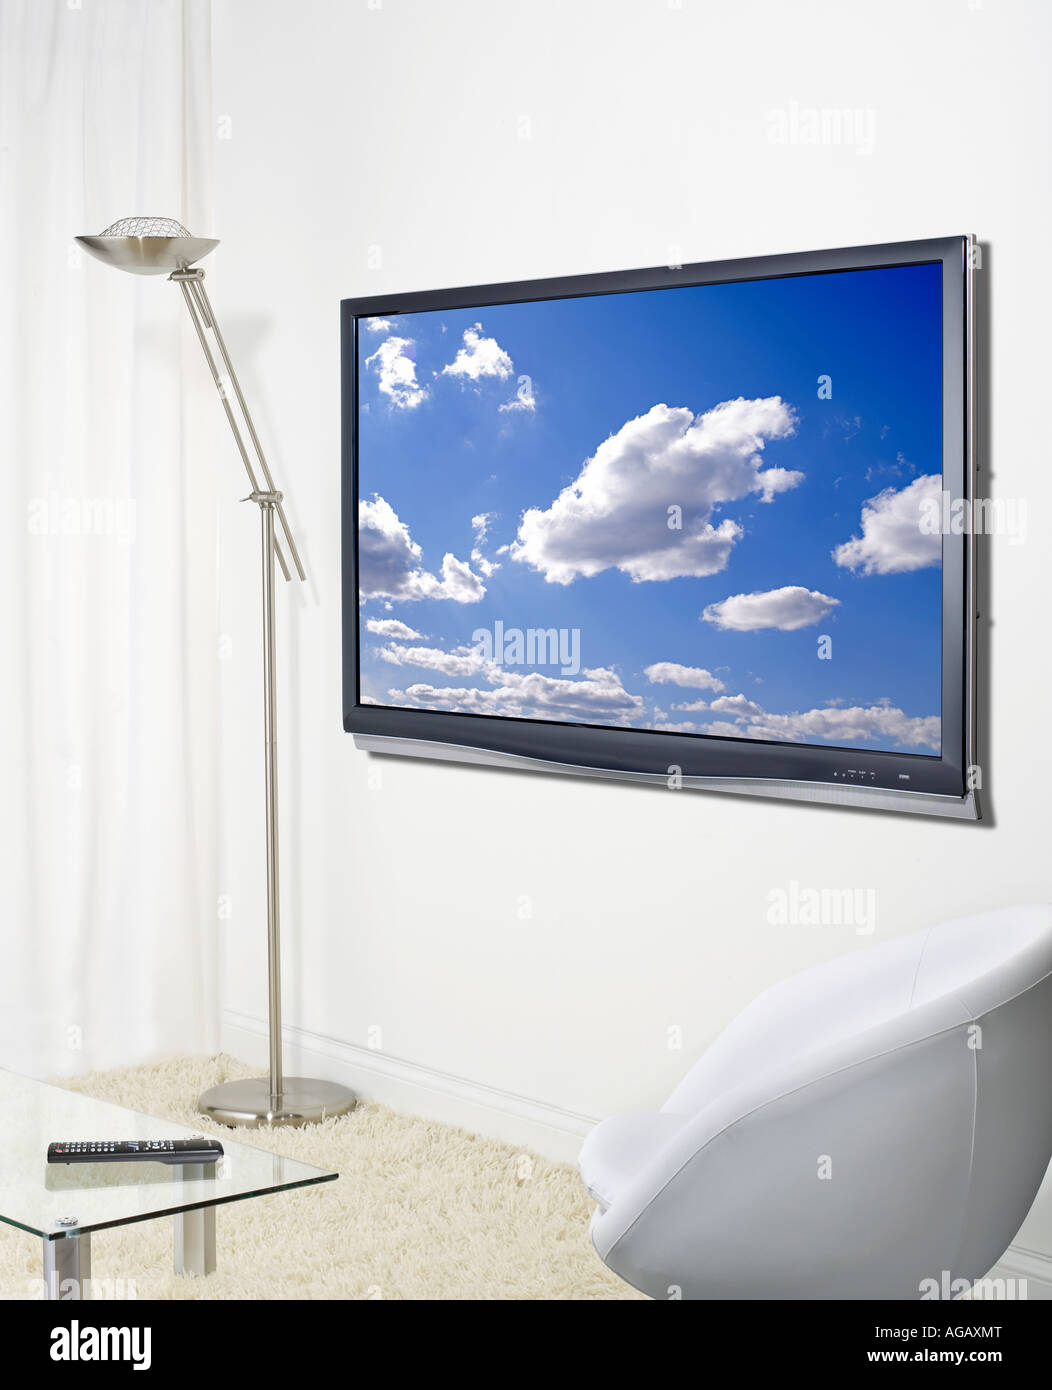 Télévision TV Plasma sur le mur vertical moniteur écran plat Banque D'Images